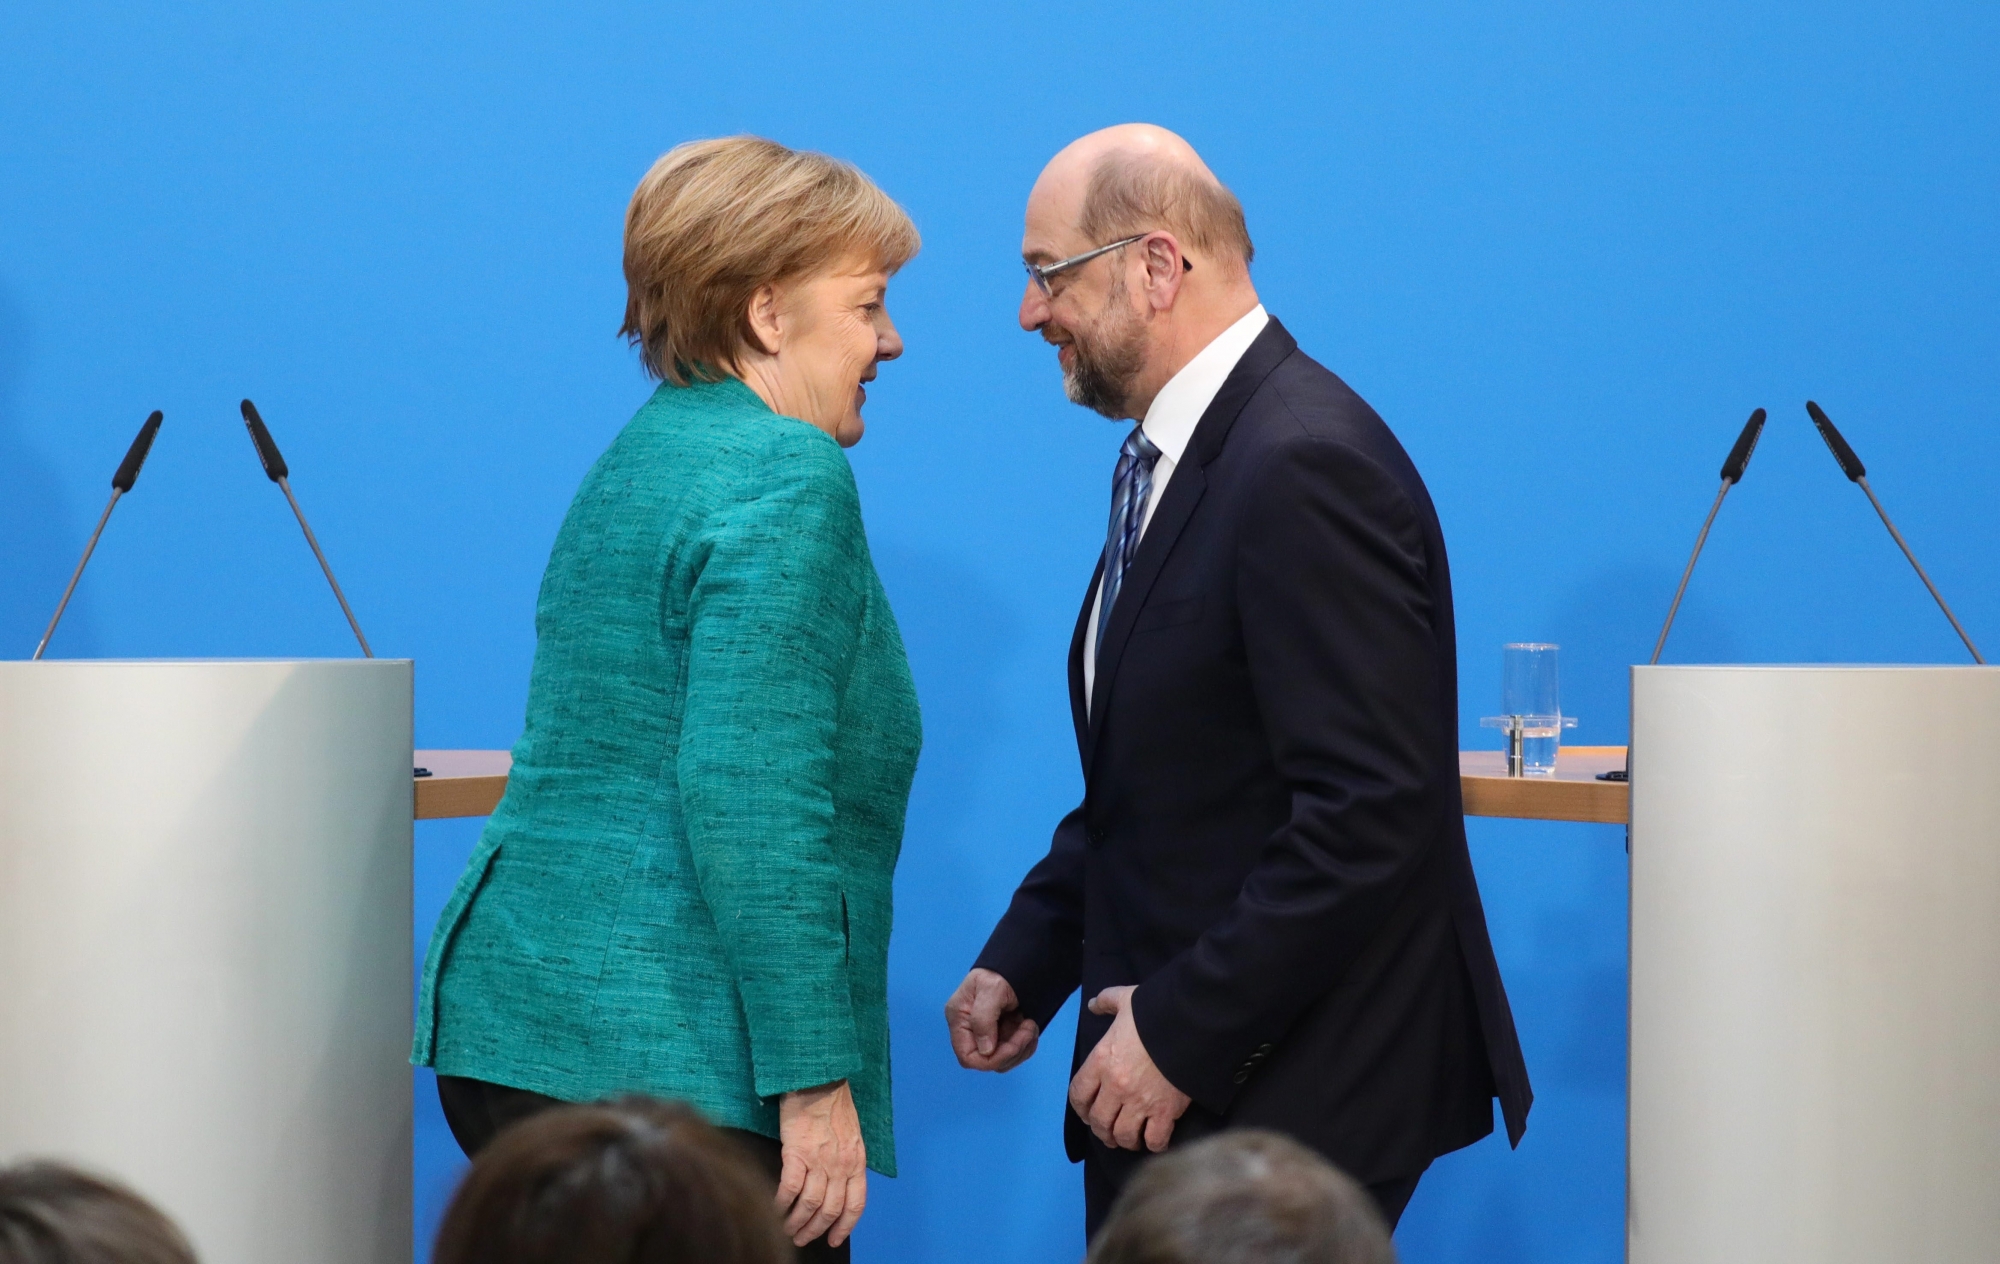 L'accord entre la chancelière Angela Merkel et le social-démocrate Martin Schulz est largement commenté en Suisse alémanique.